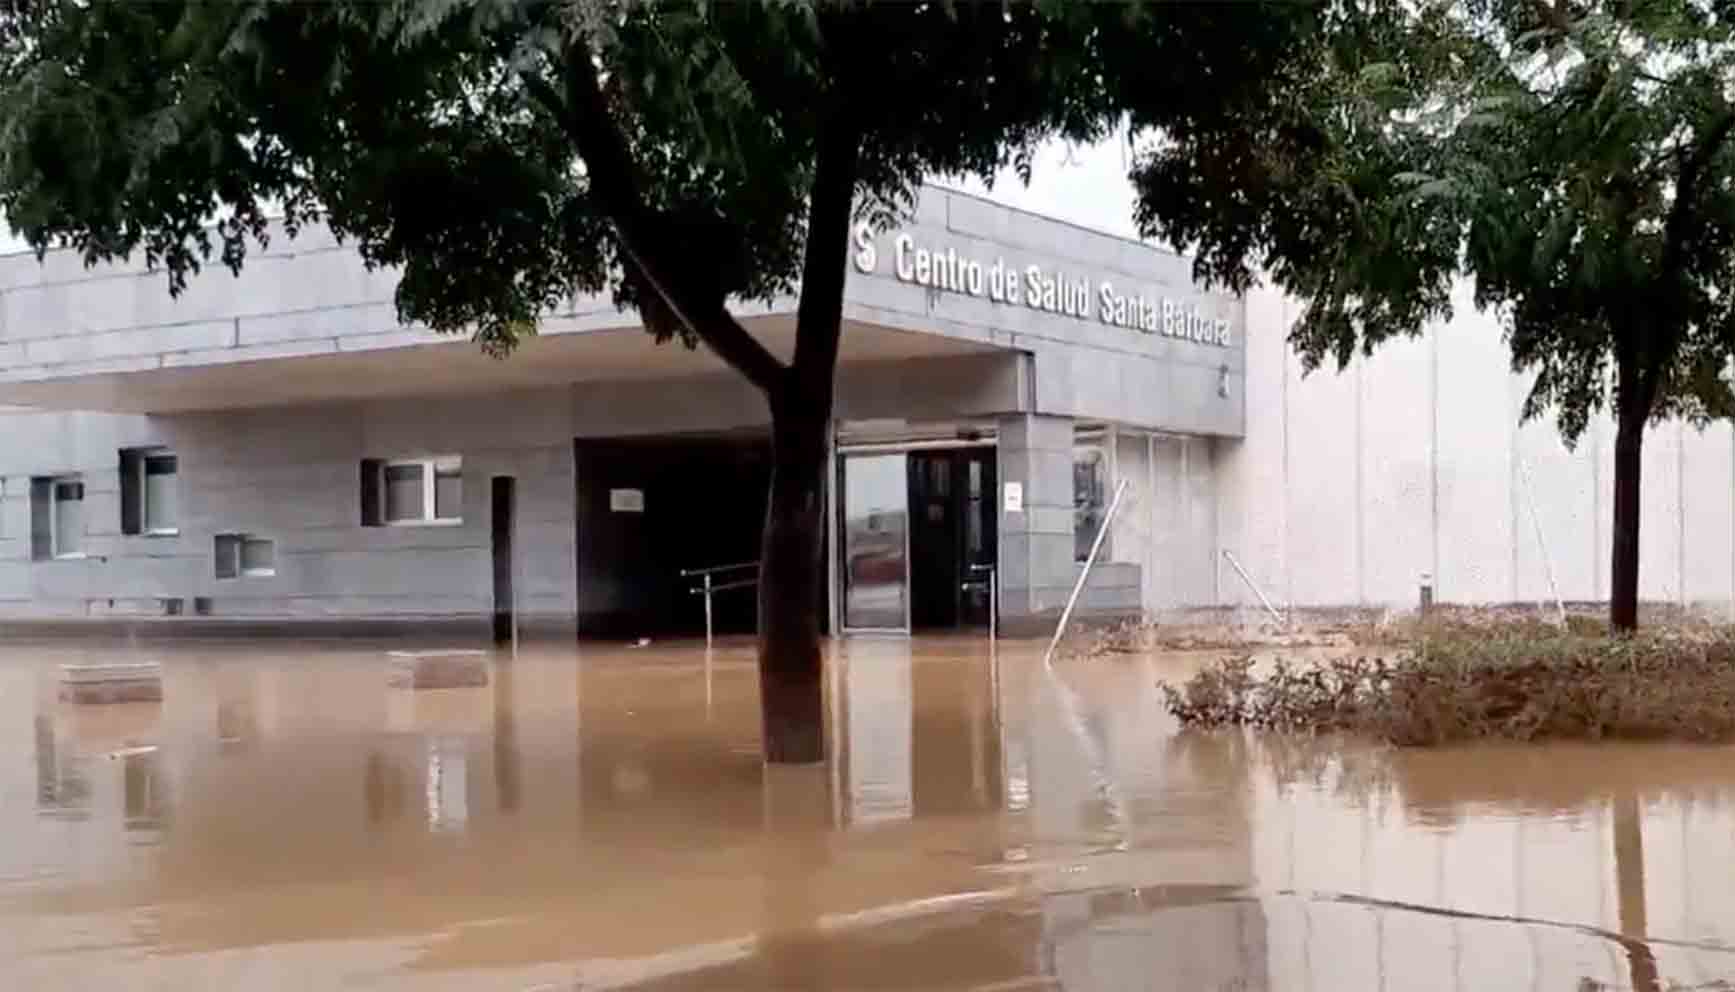 El centro de Salud de Santa Bárbara, inundado. Imagen extraída de un vídeo de Rubén García Castelbón.